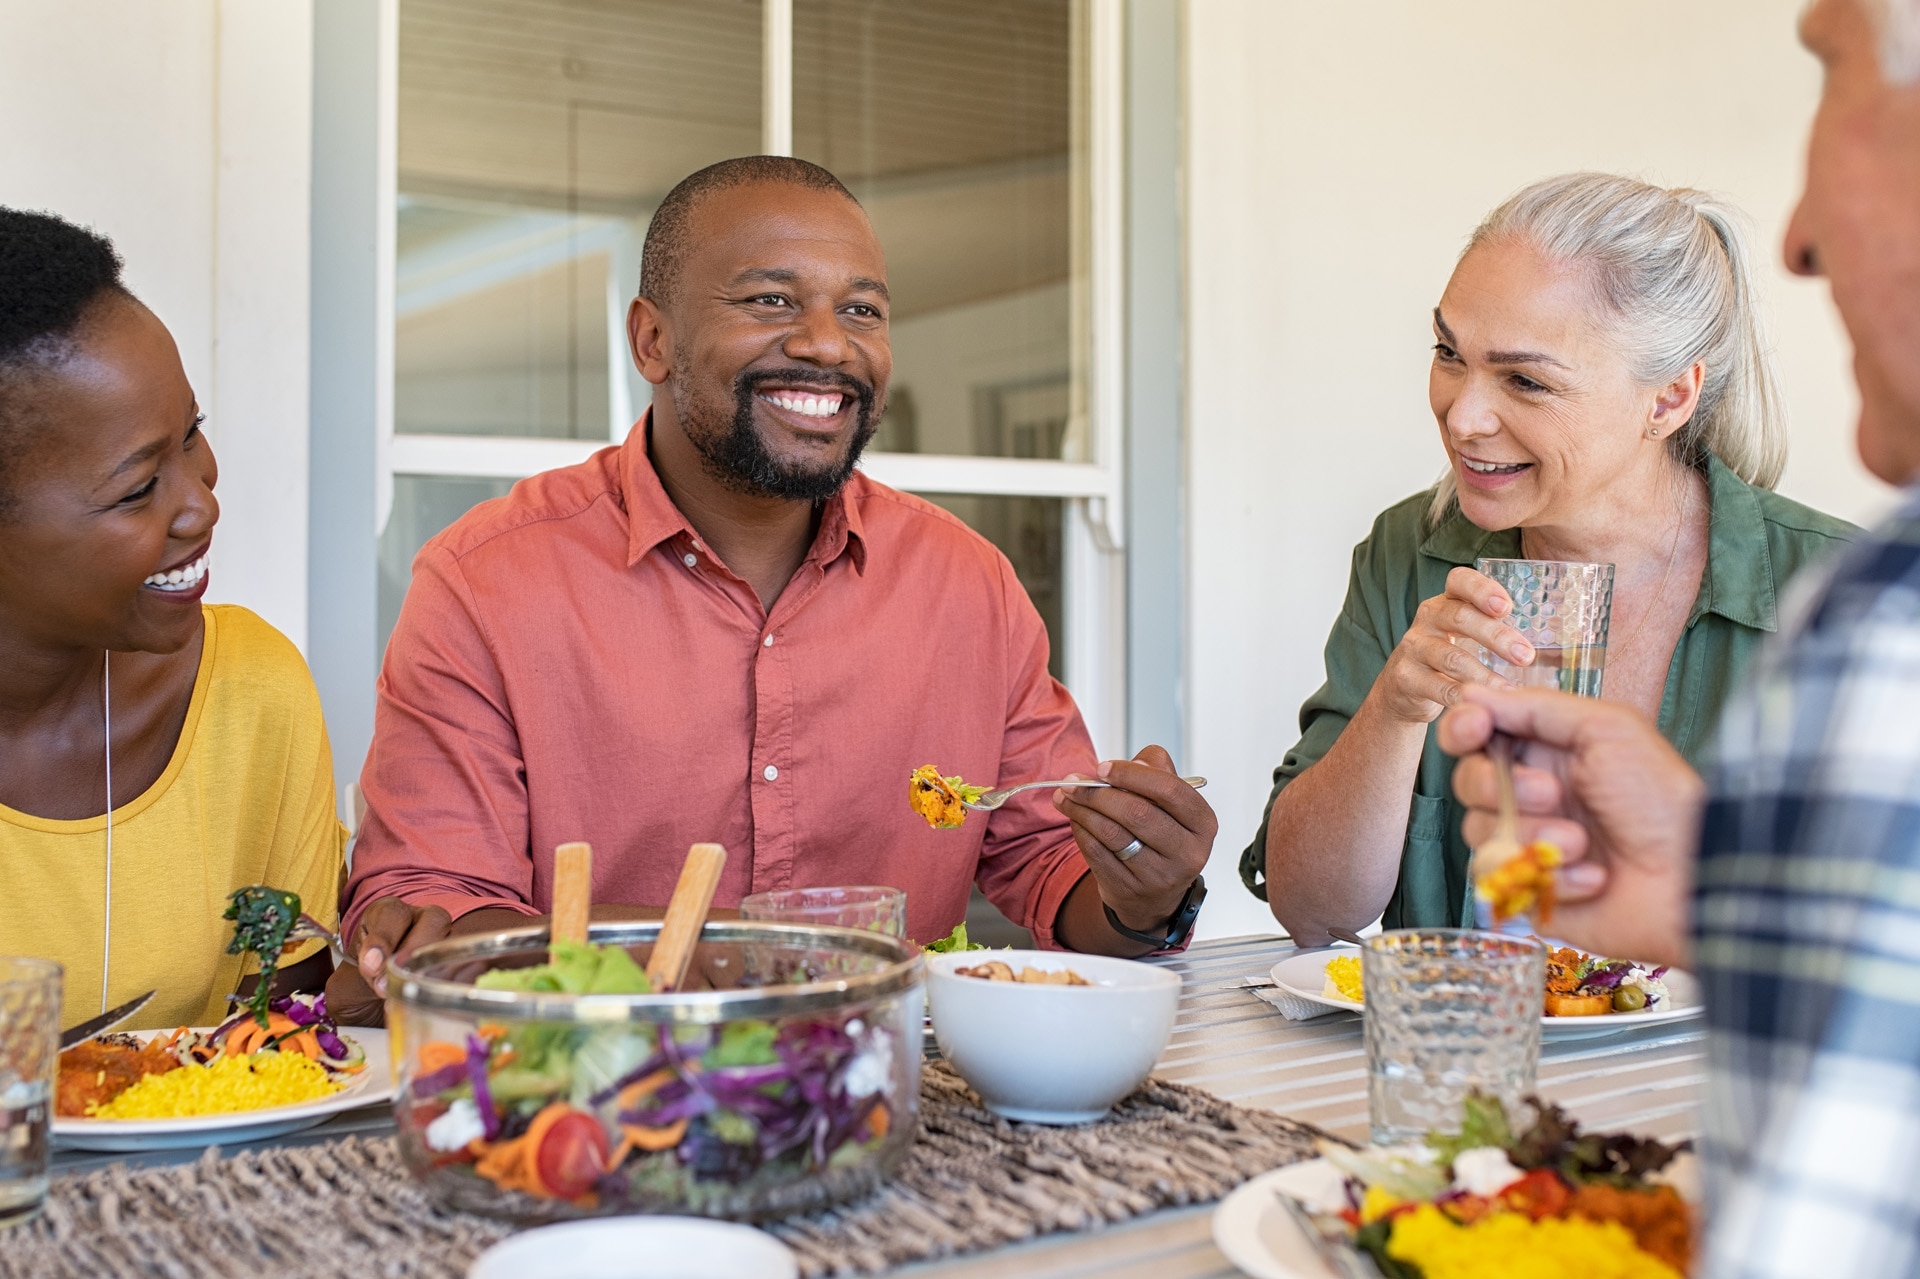 Amis heureux et souriants déjeunant ensemble dans une maison. Adultes multiethniques fêtant une heureuse occasion en mangeant de la nourriture saine. Conversation entre un couple âgé et un couple africain lors d’un repas.